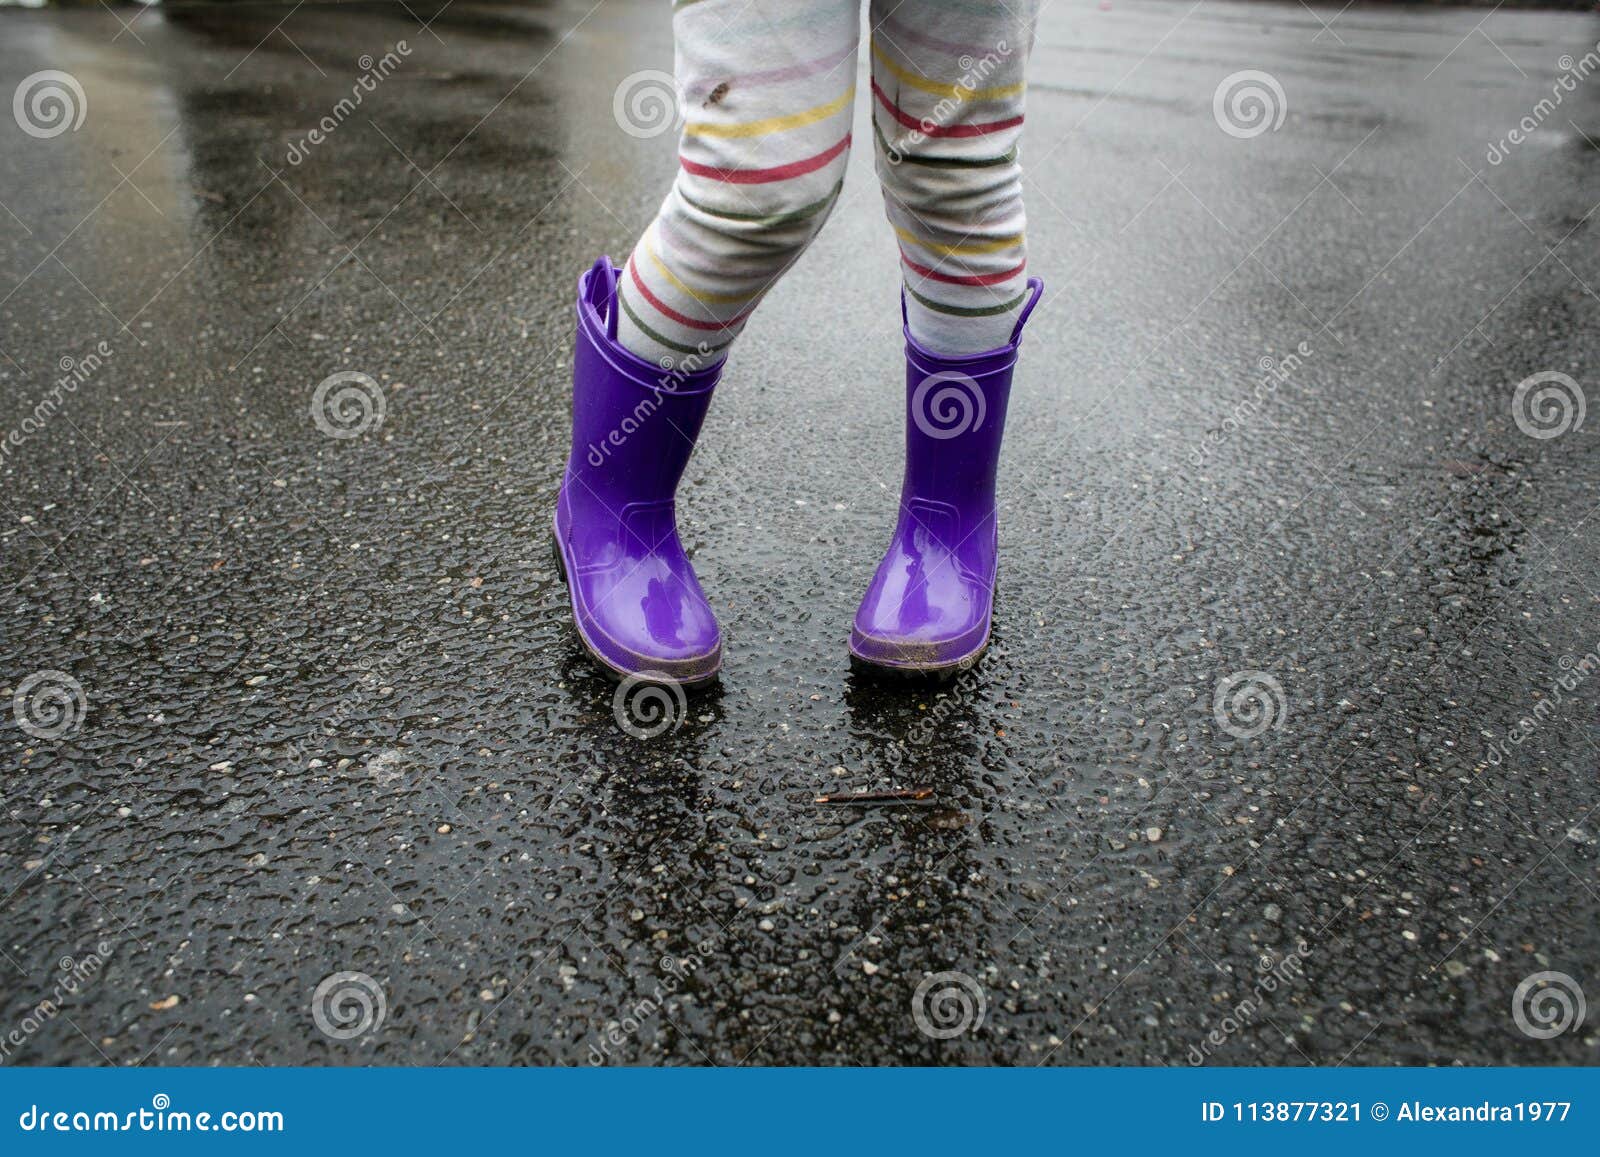 girl in rain boots